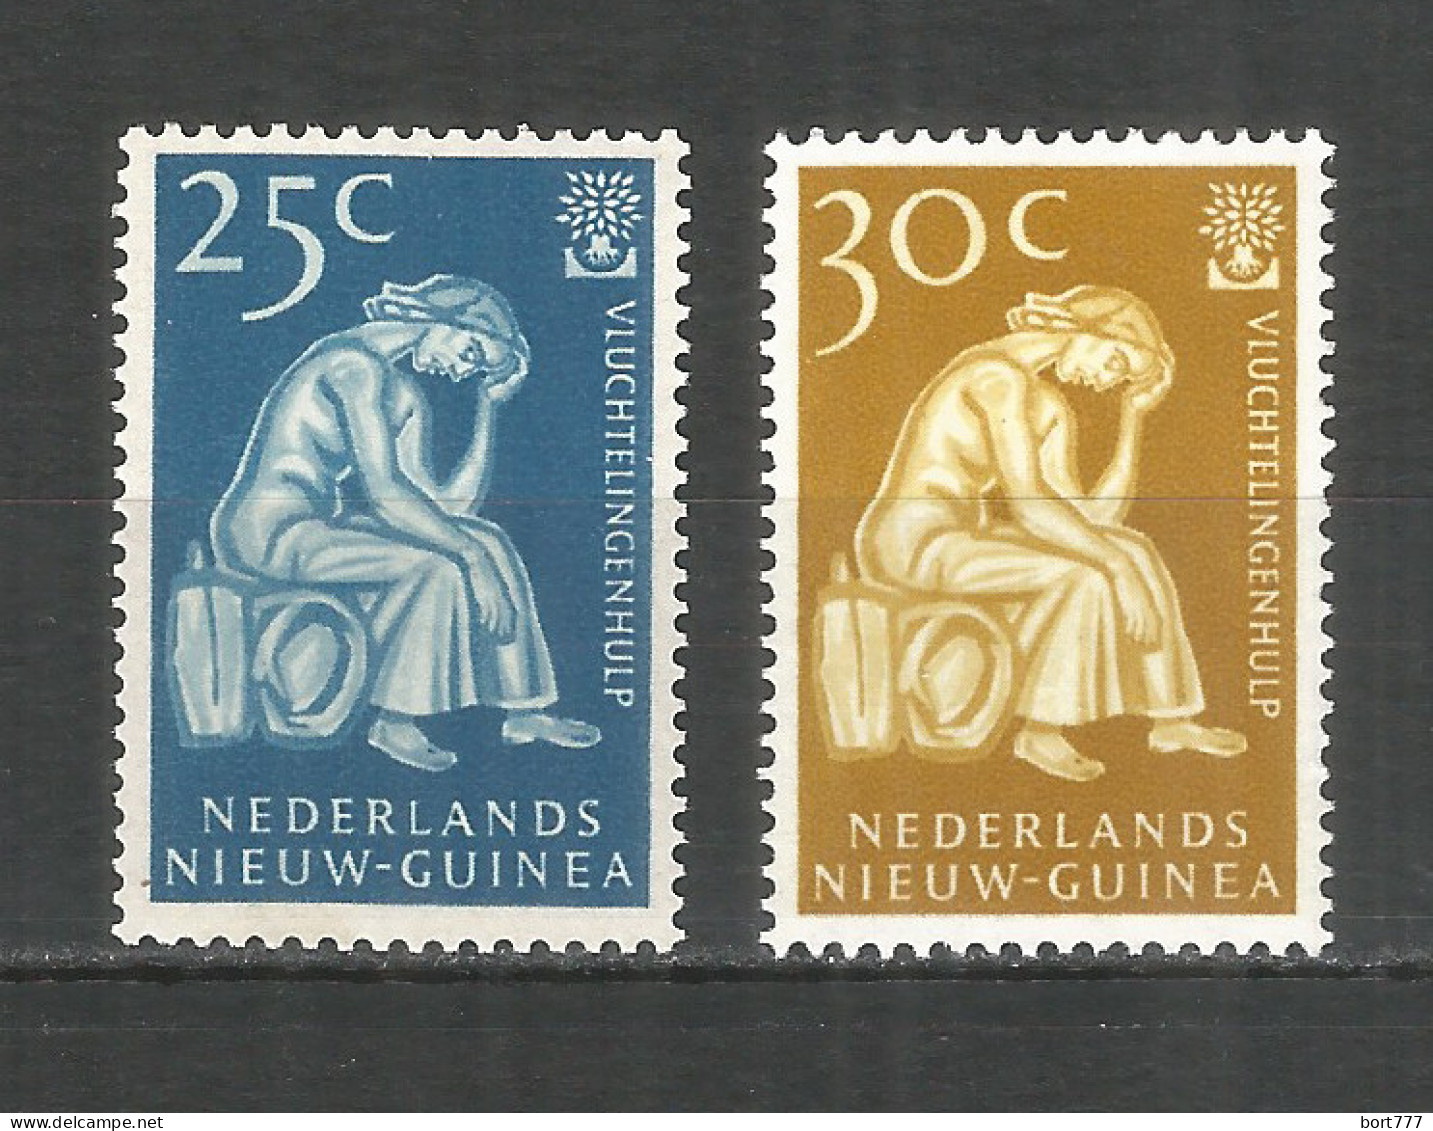 Netherlands New Guinea 1960 Mint Stamps MNH (**) Mi.# 61-62 - Niederländisch-Neuguinea